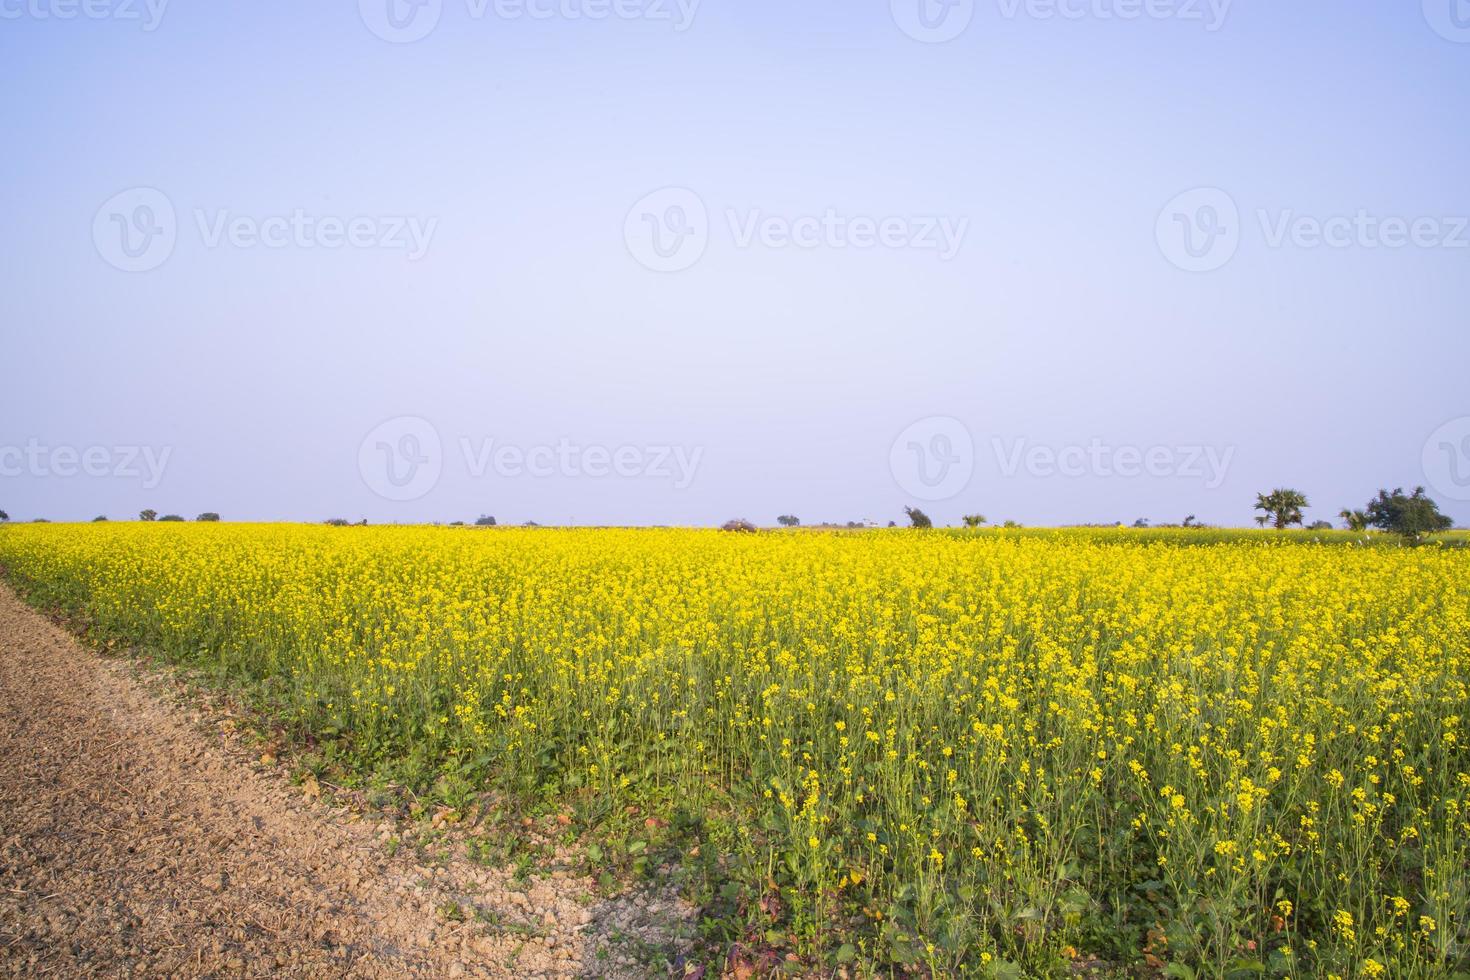 camino de tierra rural a través del campo de colza con el fondo del cielo azul foto